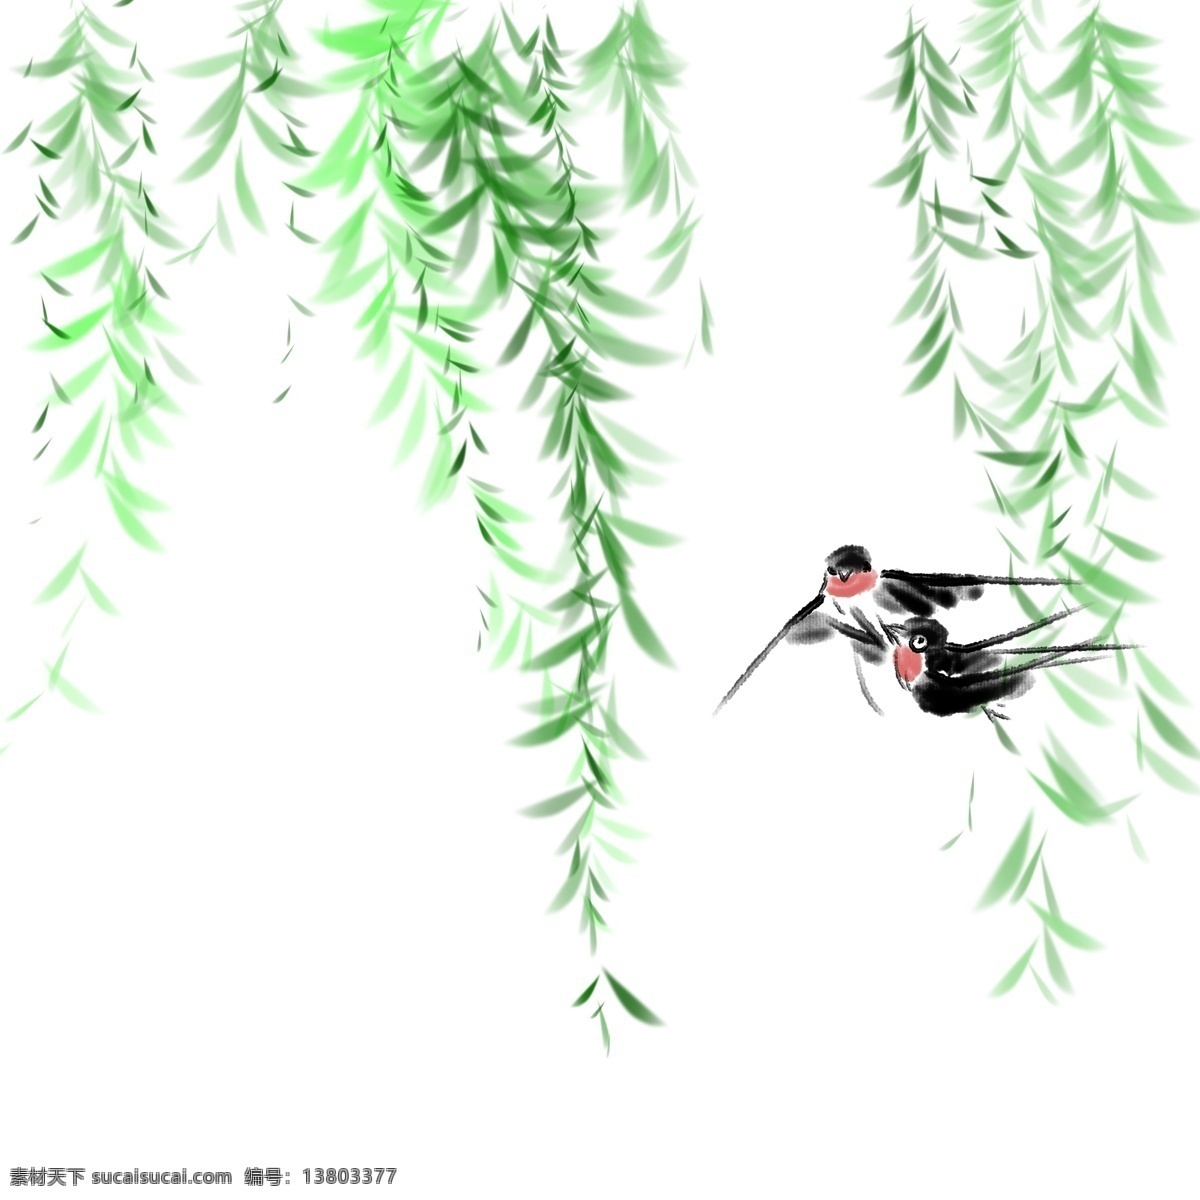 卡通 可爱 柳树 小燕子 绿色植物 插图 插画 手绘 垂 柳枝 手绘垂柳 绿色叶子 垂柳枝 垂柳 卡通小燕子